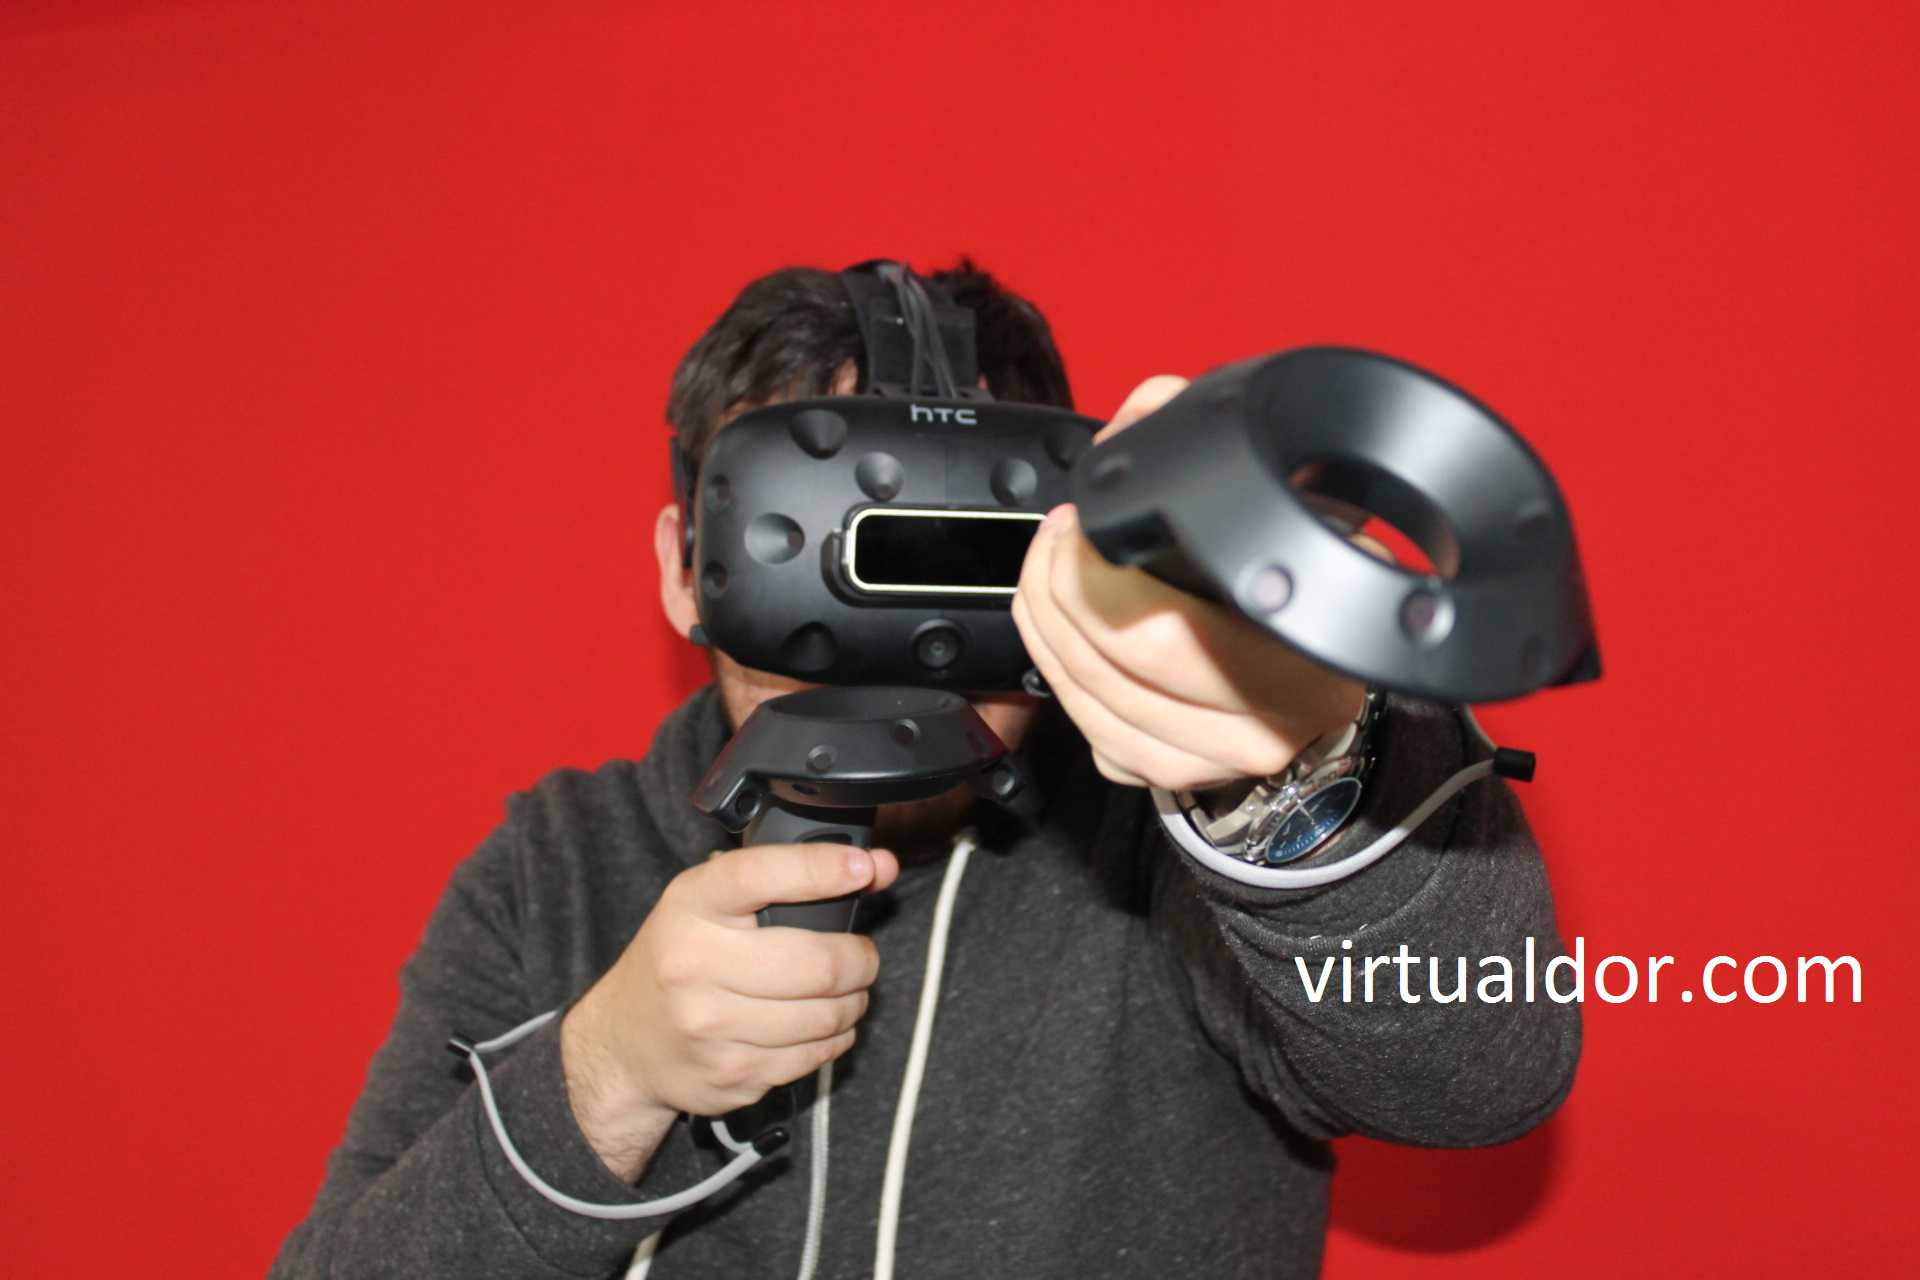 Virtual Dor